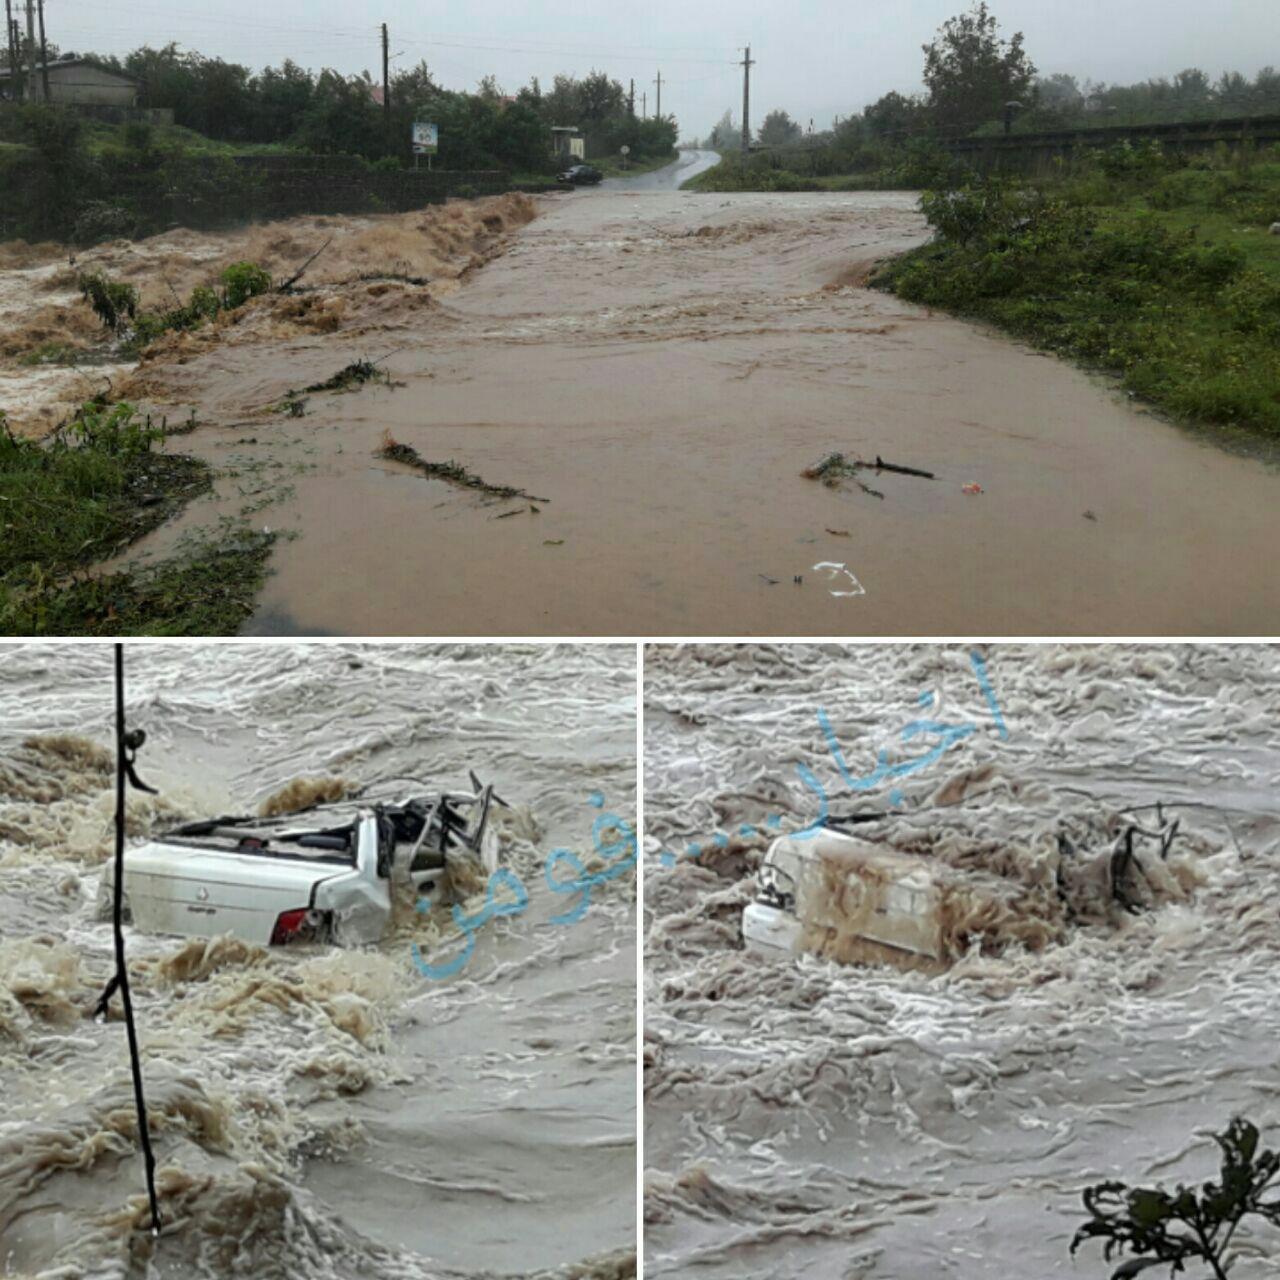 سقوط پراید در رودخانه روستای رودبارچیره شهرستان فومن/سرعت بالای آب استفاده از قایقهای امدادی را غیر ممکن ساخت